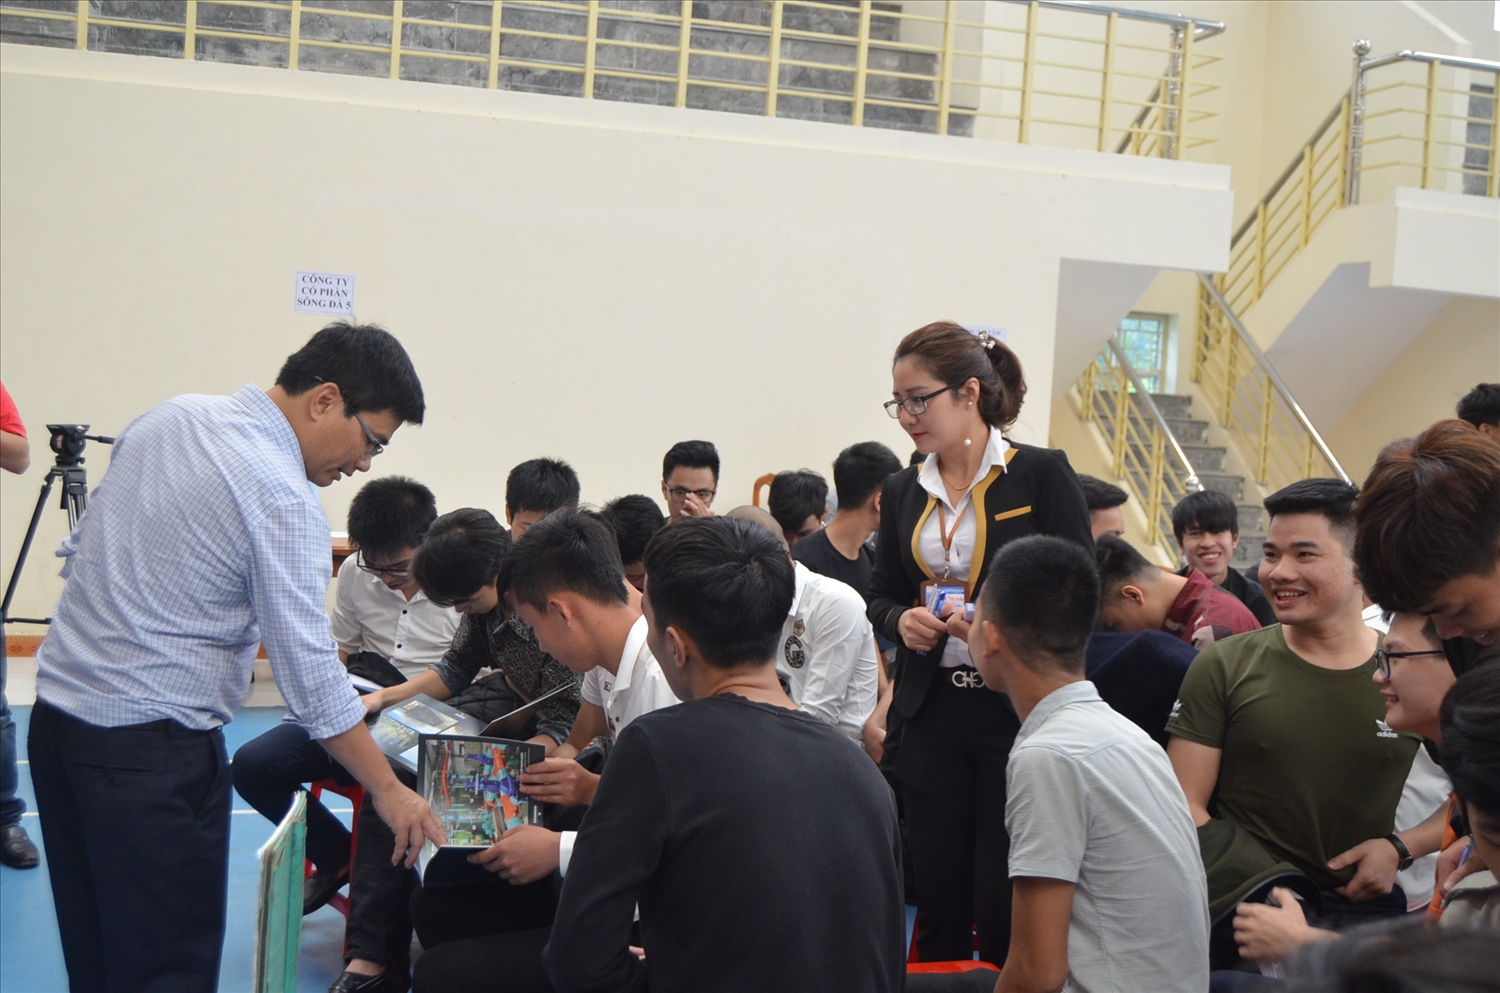 Trường Cao đẳng nghề Kỹ thuật - Công nghệ Tuyên Quang phối hợp với các đơn vị, doanh nghiệp tổ chức Hội nghị tư vấn, giới thiệu việc làm cho học sinh, sinh viên nhà trường.